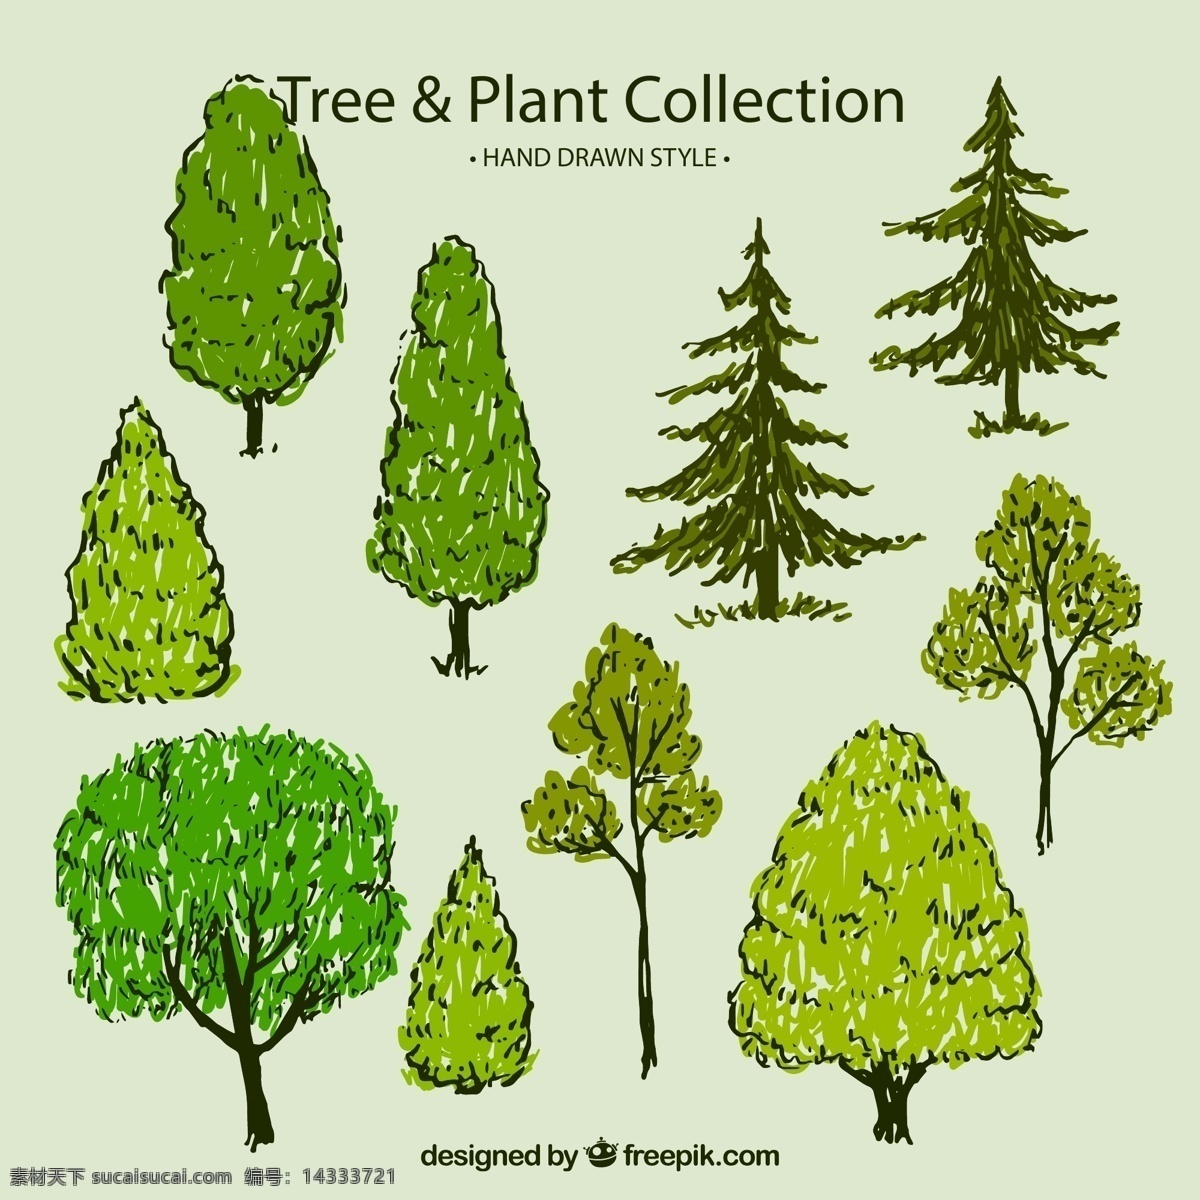 手绘 绿色 树木 矢量 松树 杨树 植物 源文件 高清图片